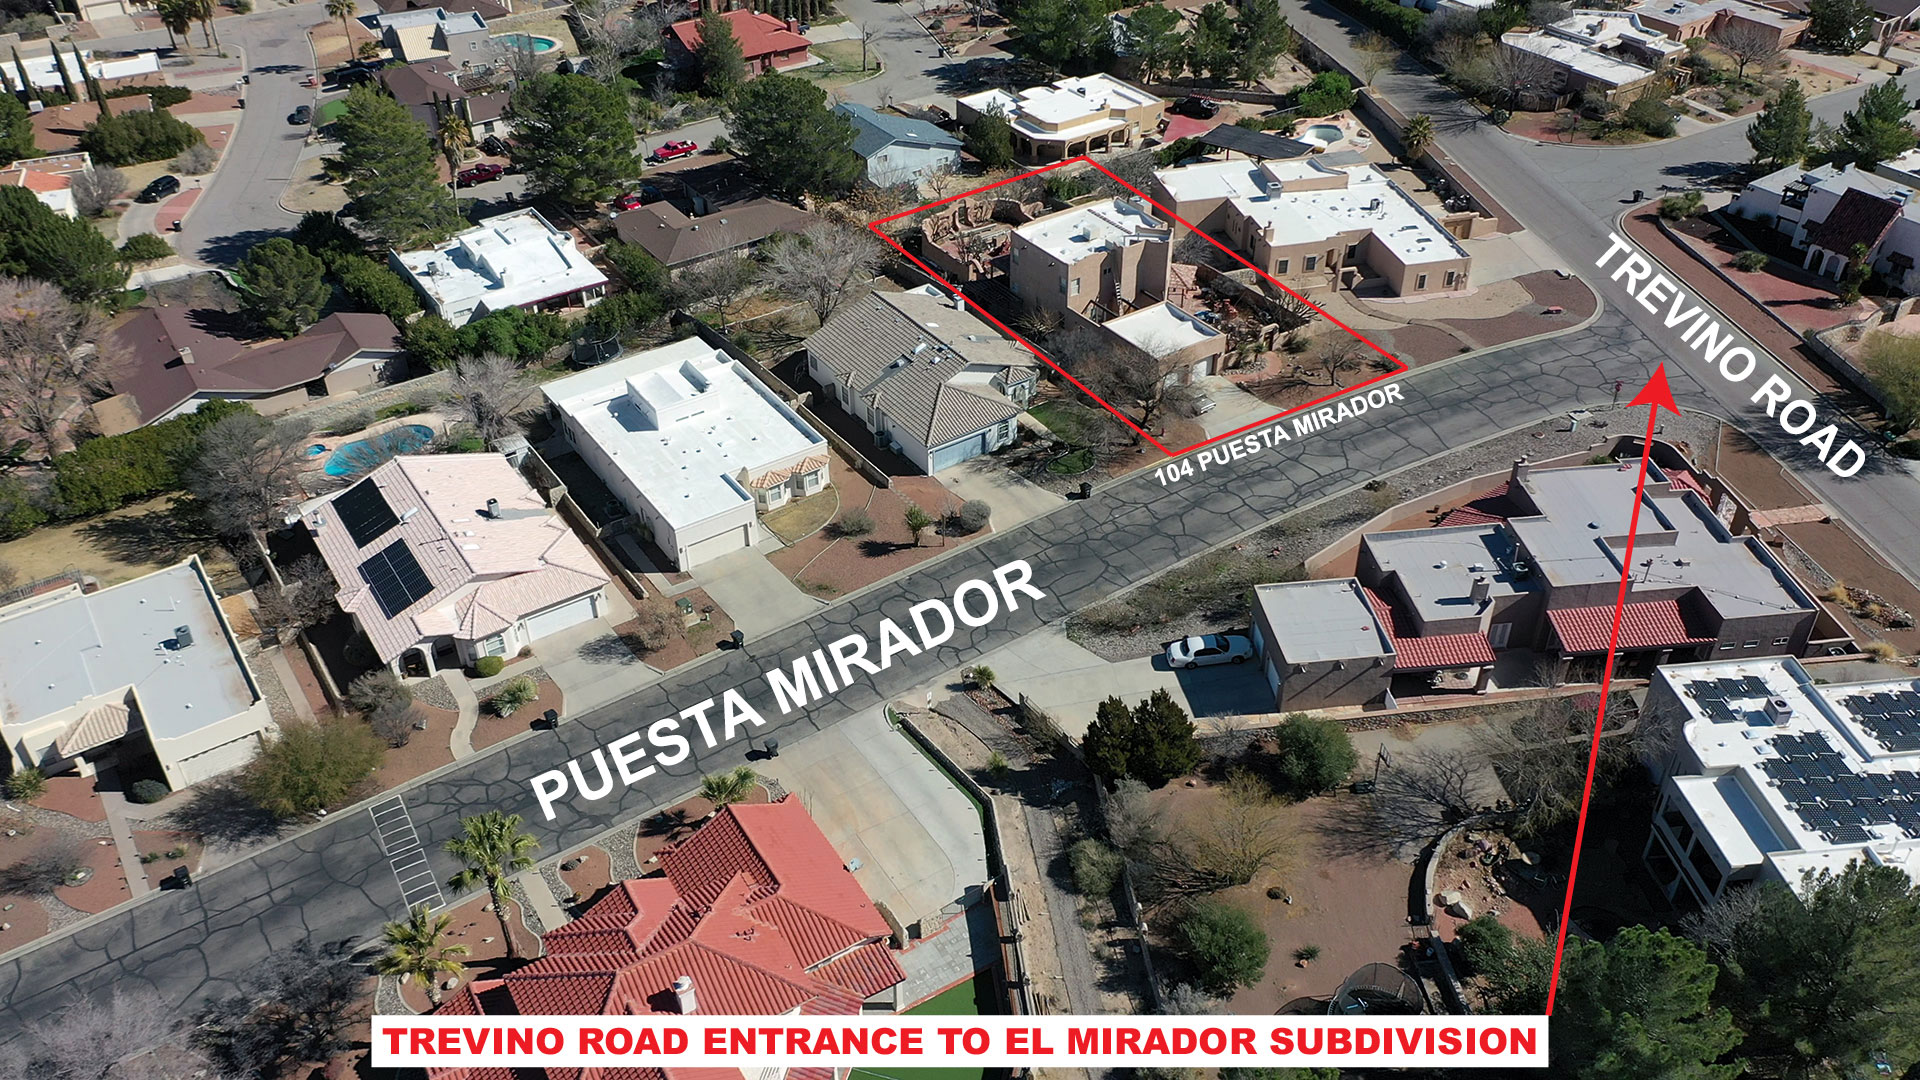 104 Puesta Mirador Proximity to Trevino Road Entrance for El Mirador Subdivision